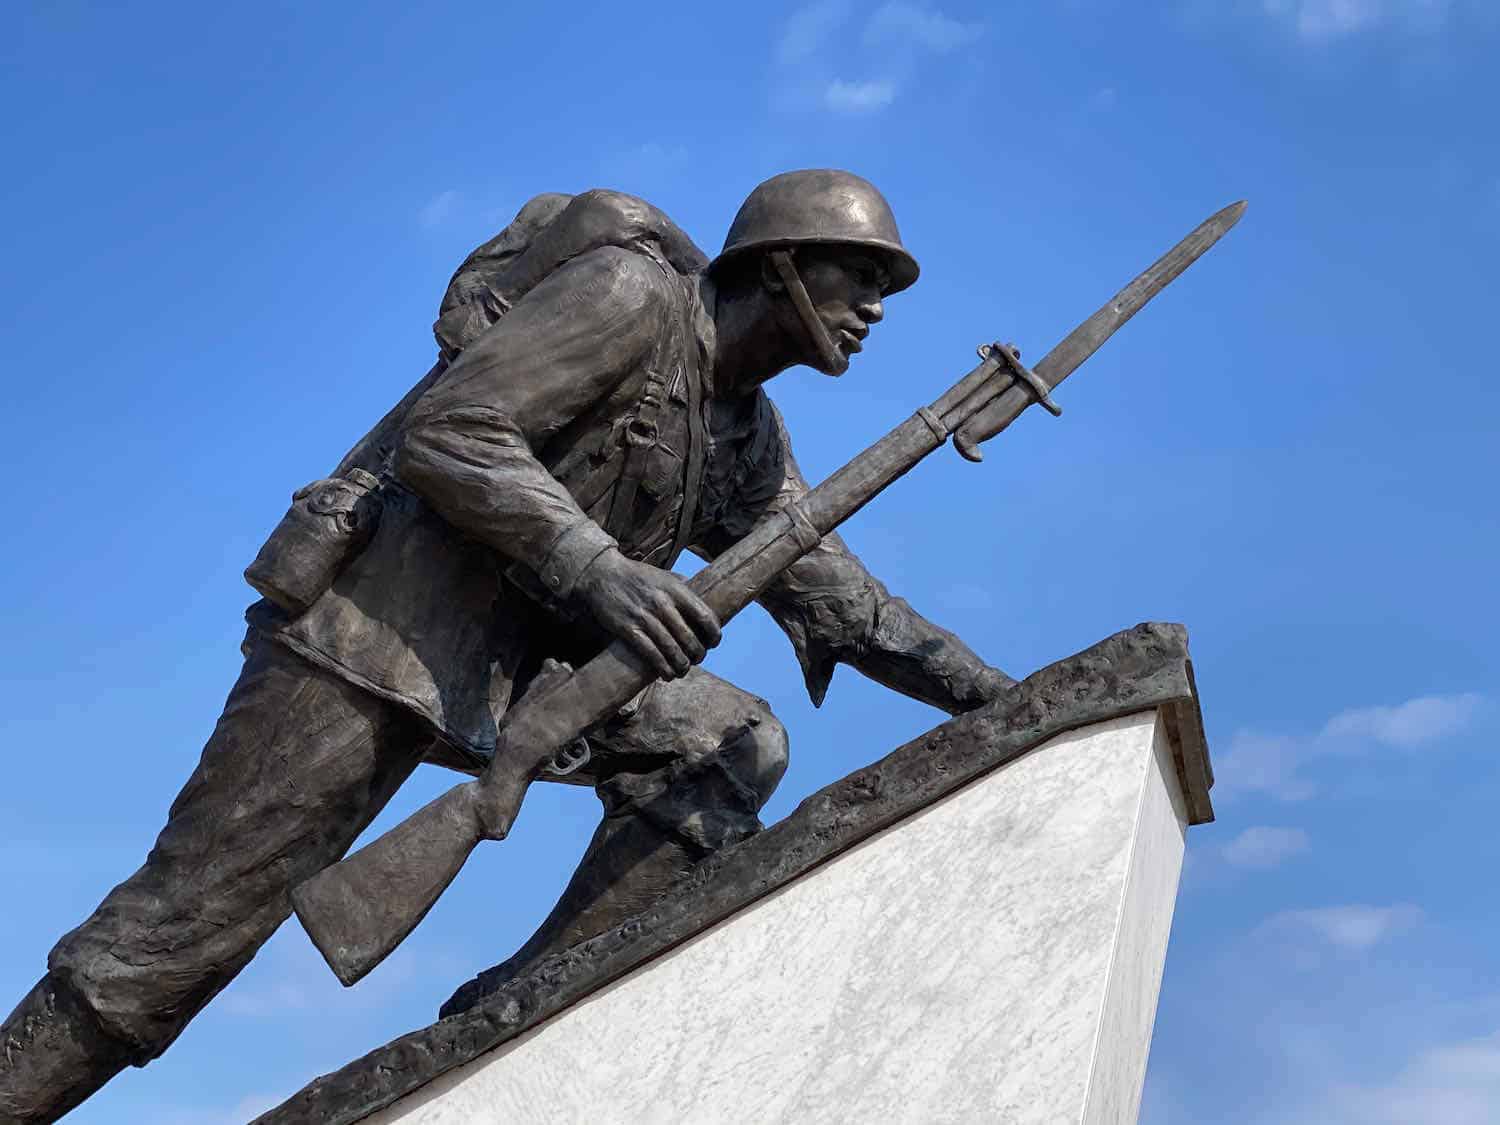 Bronze statue of first black marine at Montford Point Marine Memorial.